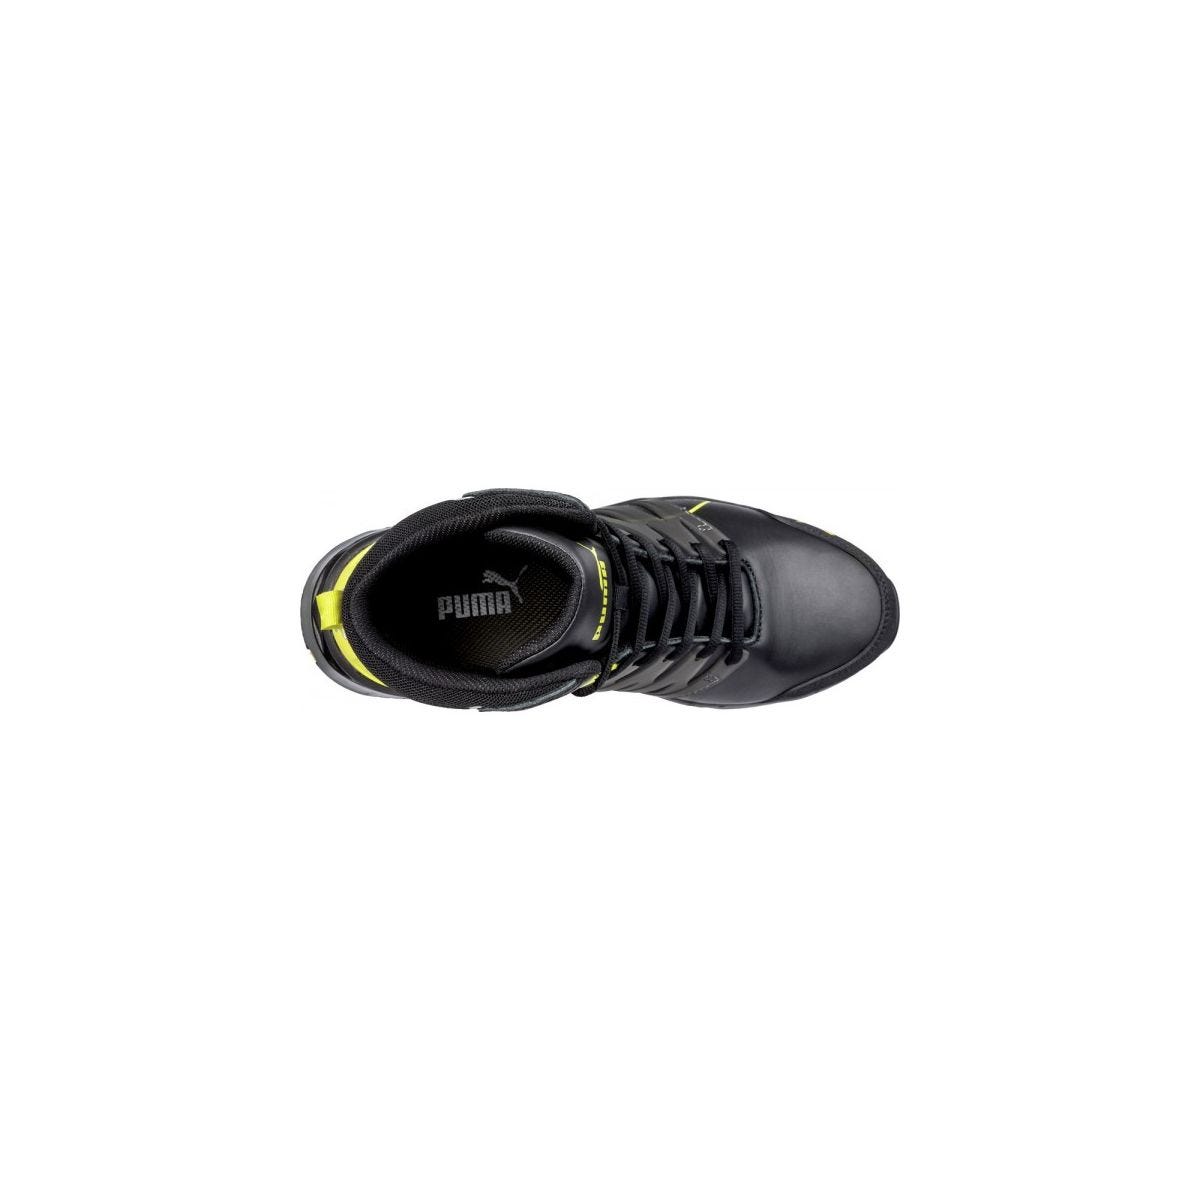 Chaussures de sécurité Velocity 2.0 YELLOW MID S3 - Puma - Taille 46 3